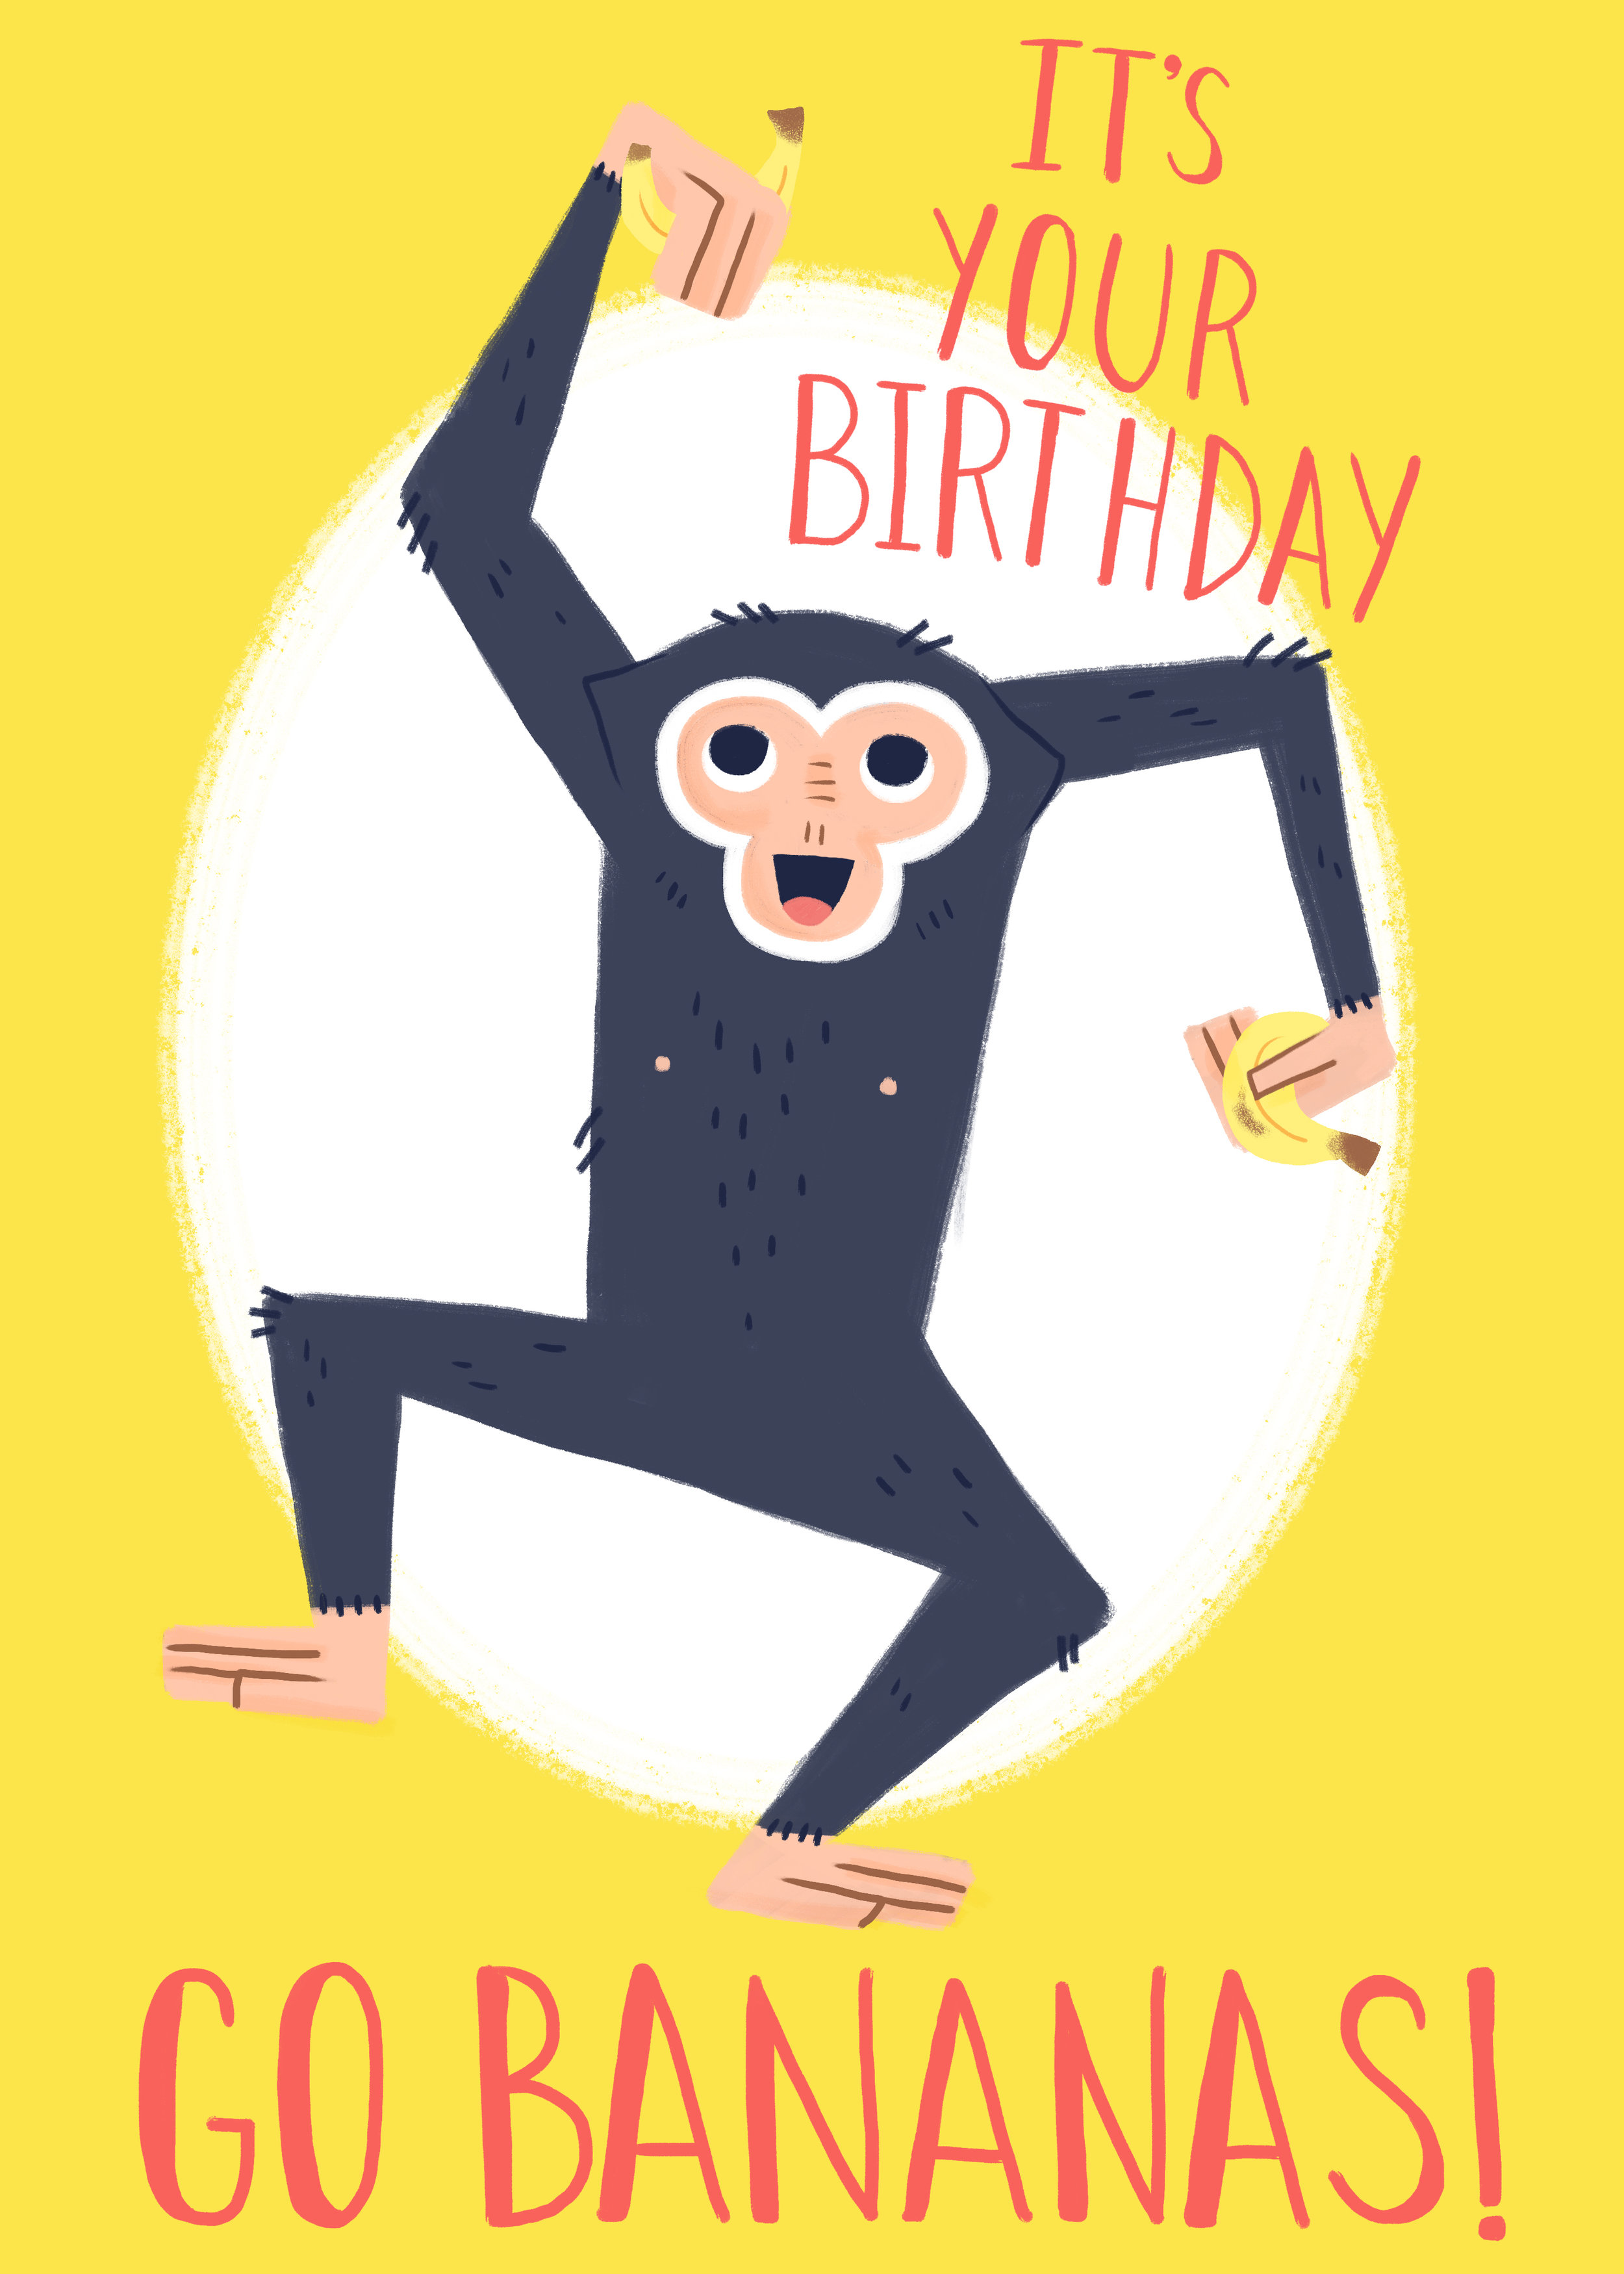 gibbons card.jpg